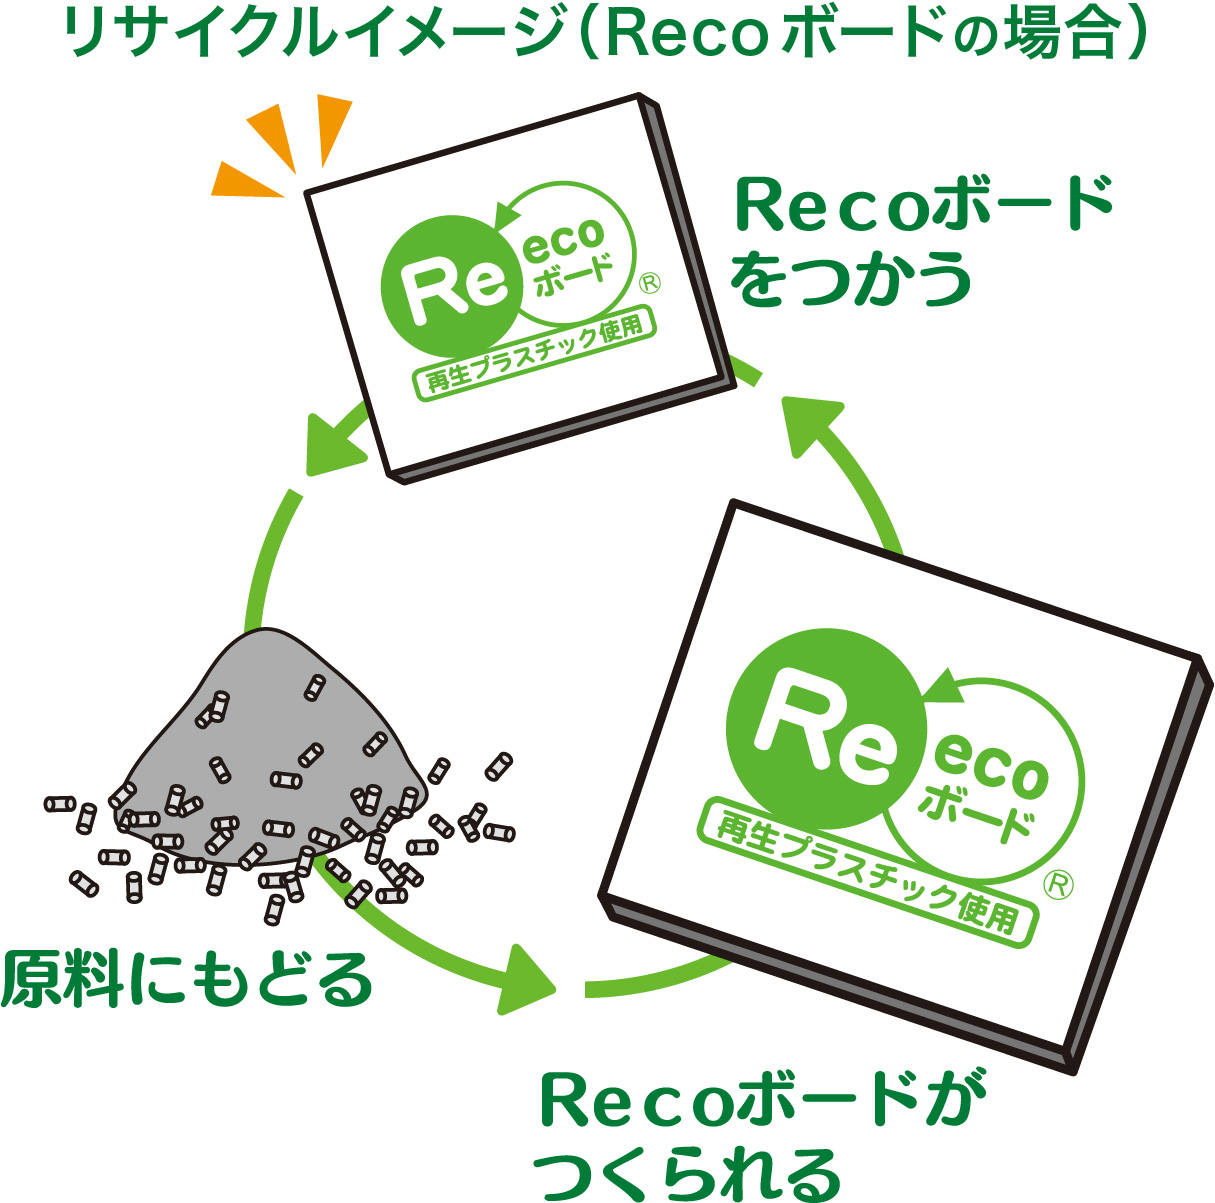 リサイクルイメージ(Reco ボードの場合)